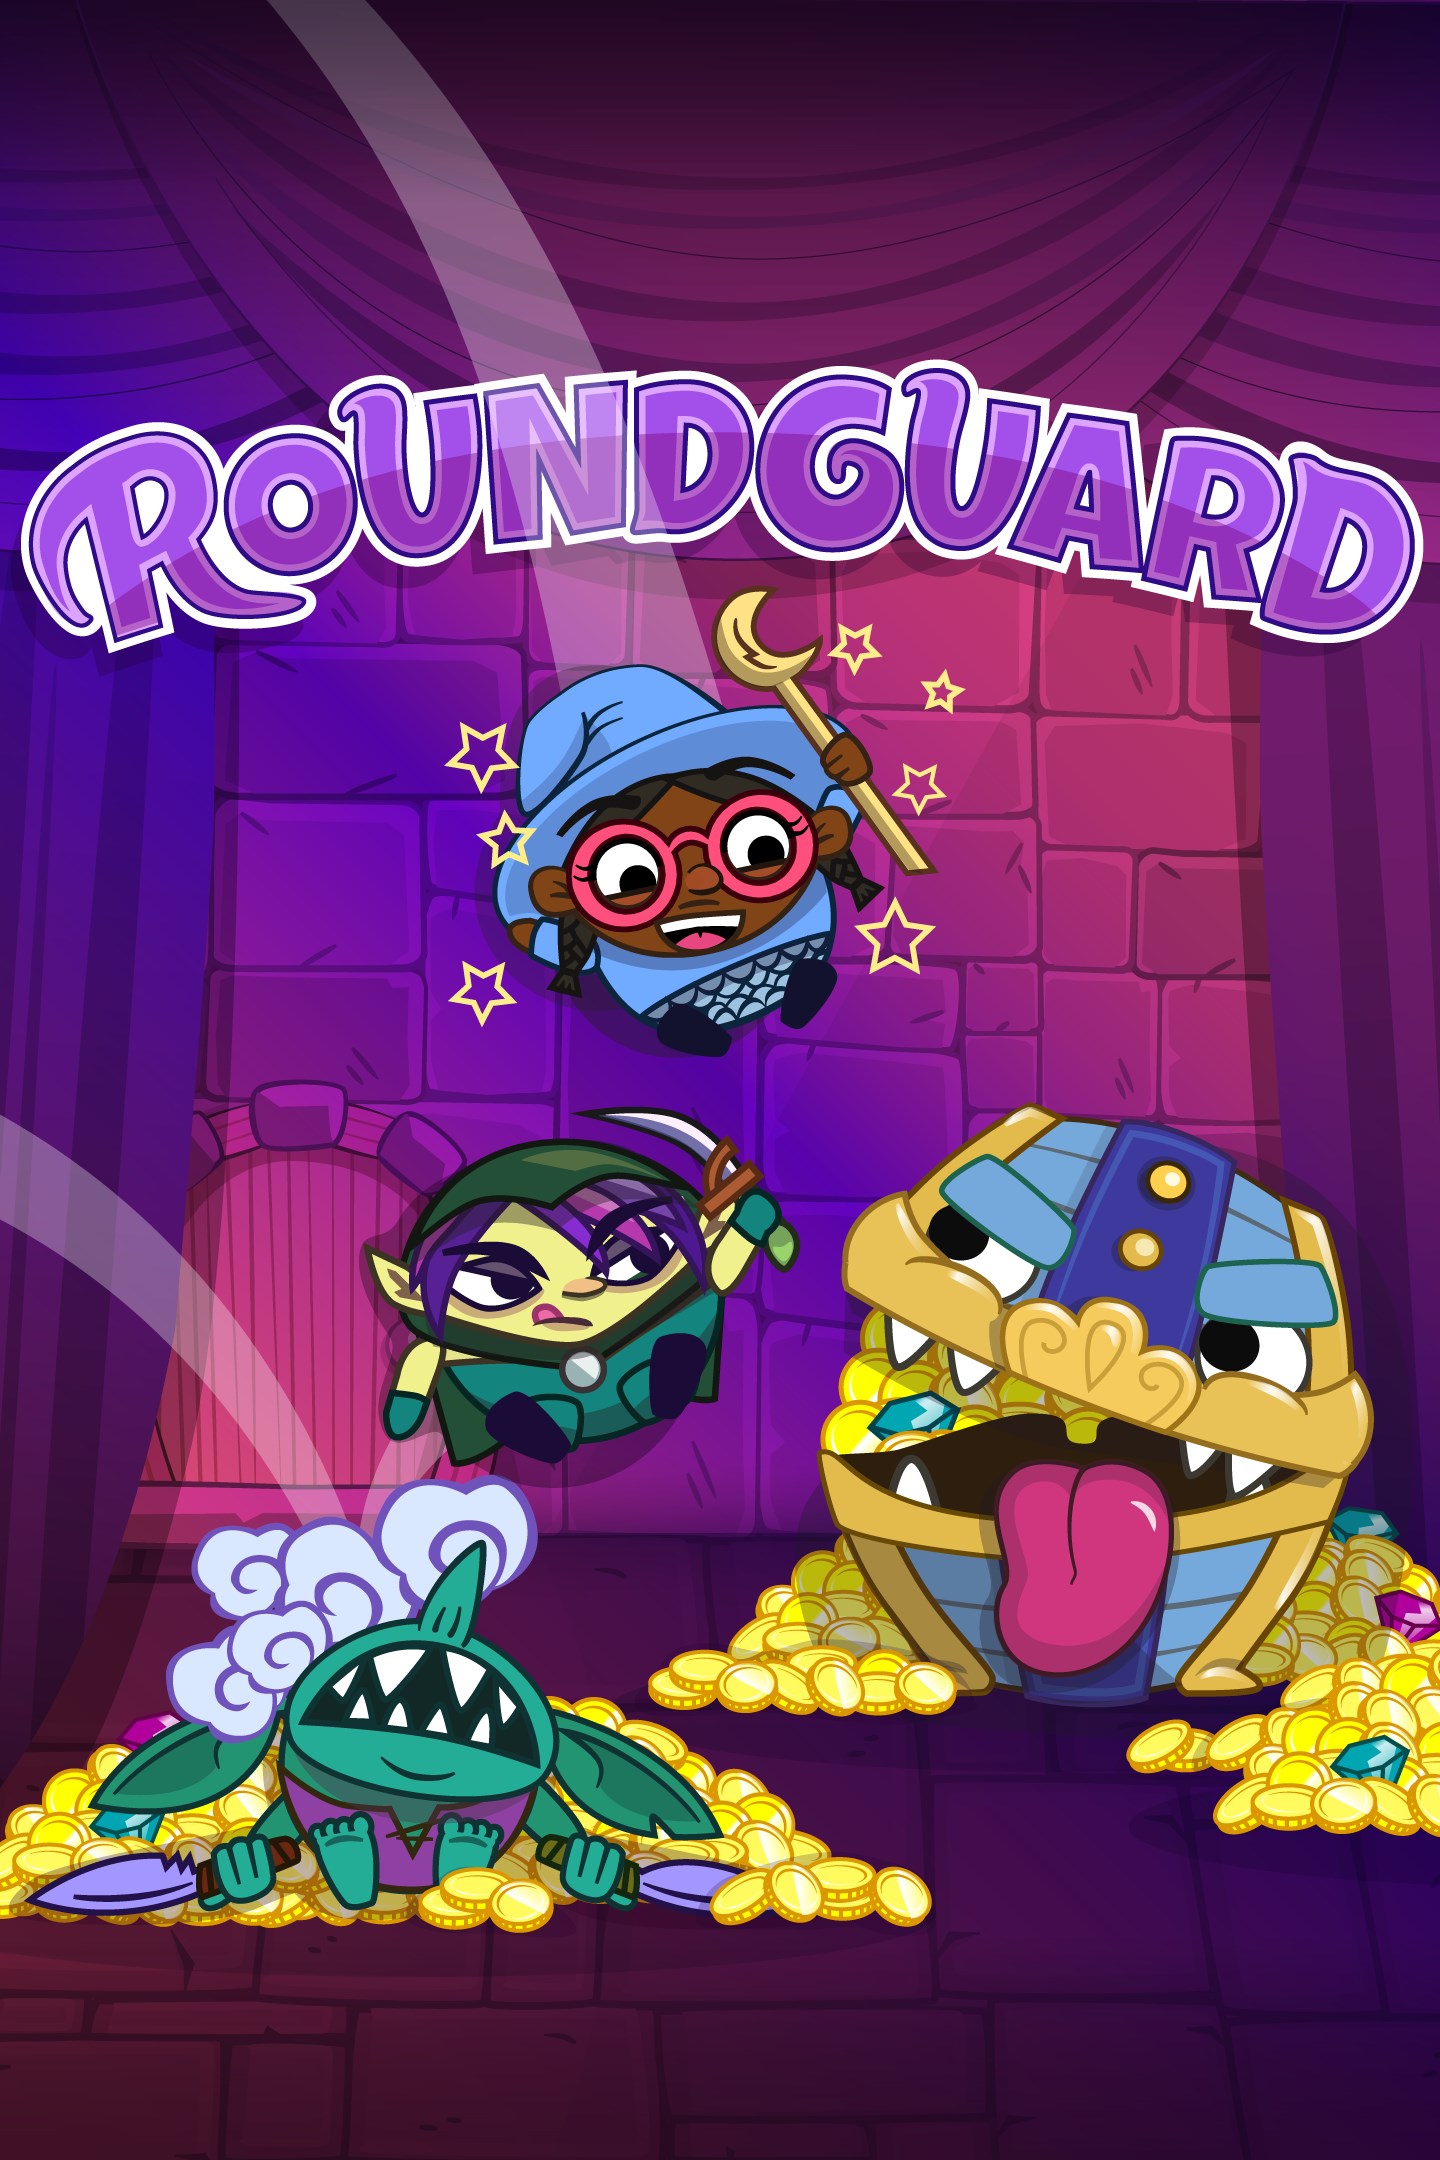 Roundguard bringt seine einzigartige Kombination aus Dungeon Crawler und Bouncy Physics auf Xbox One